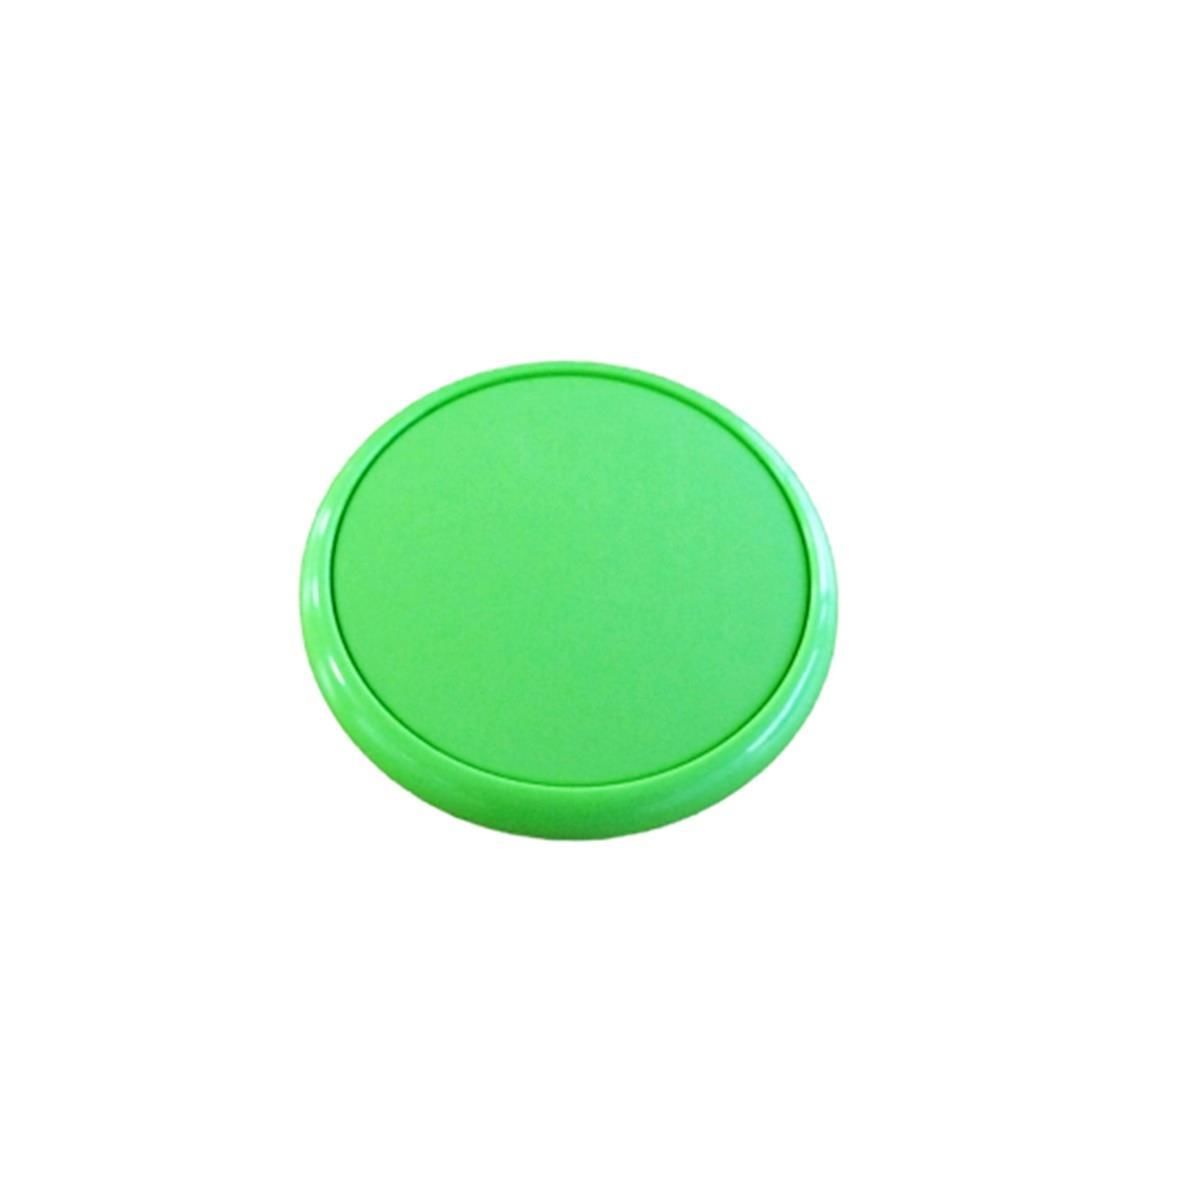 Çocuk Odası Tekli Düğme Mobilya Kulp Çap 55 mm Yeşil